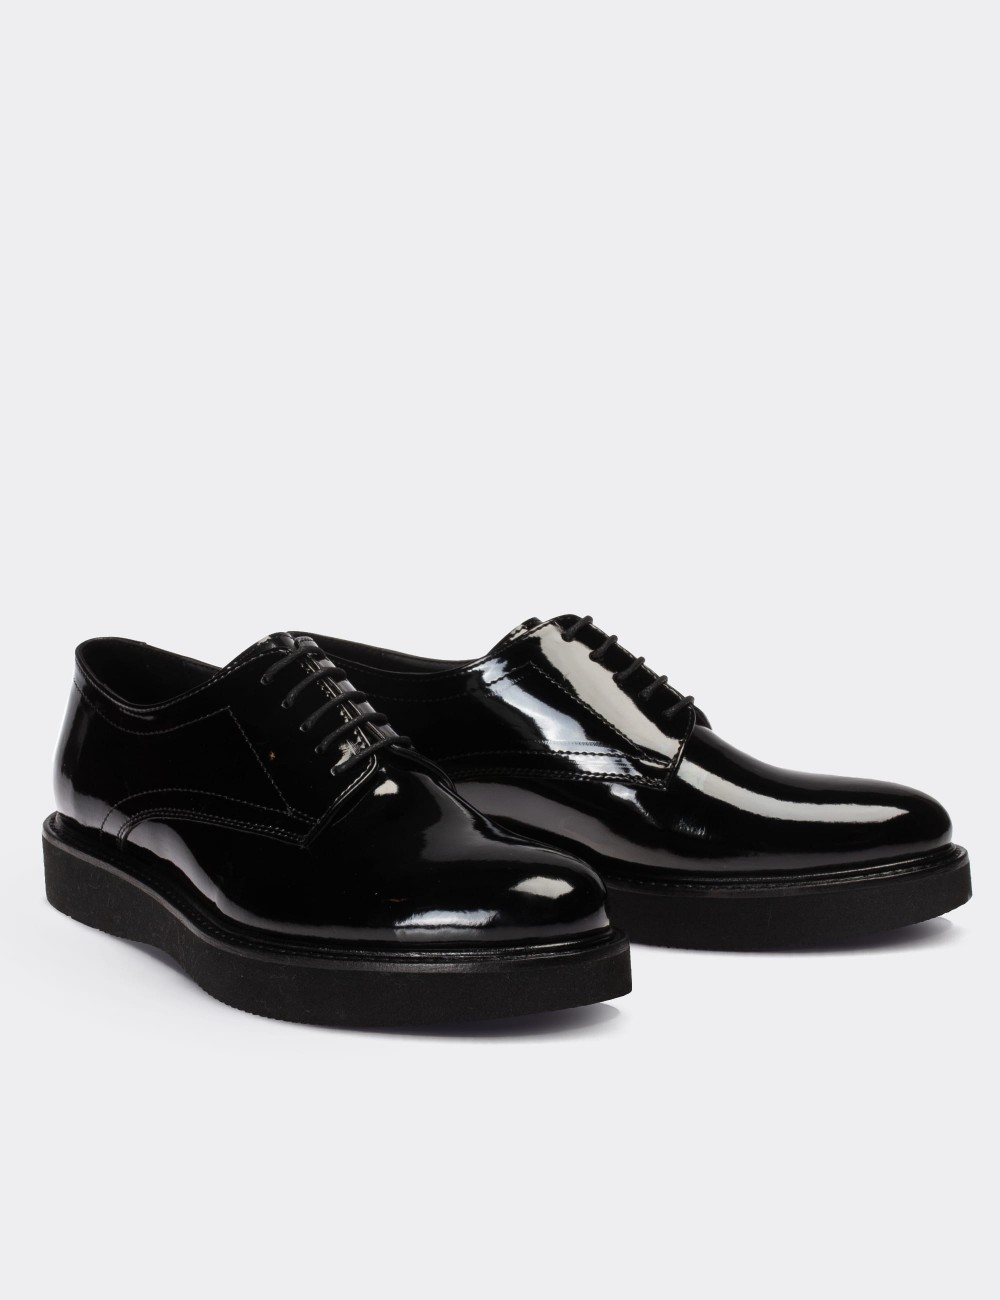 Black Patent Lace-up Shoes - 01430ZSYHE12